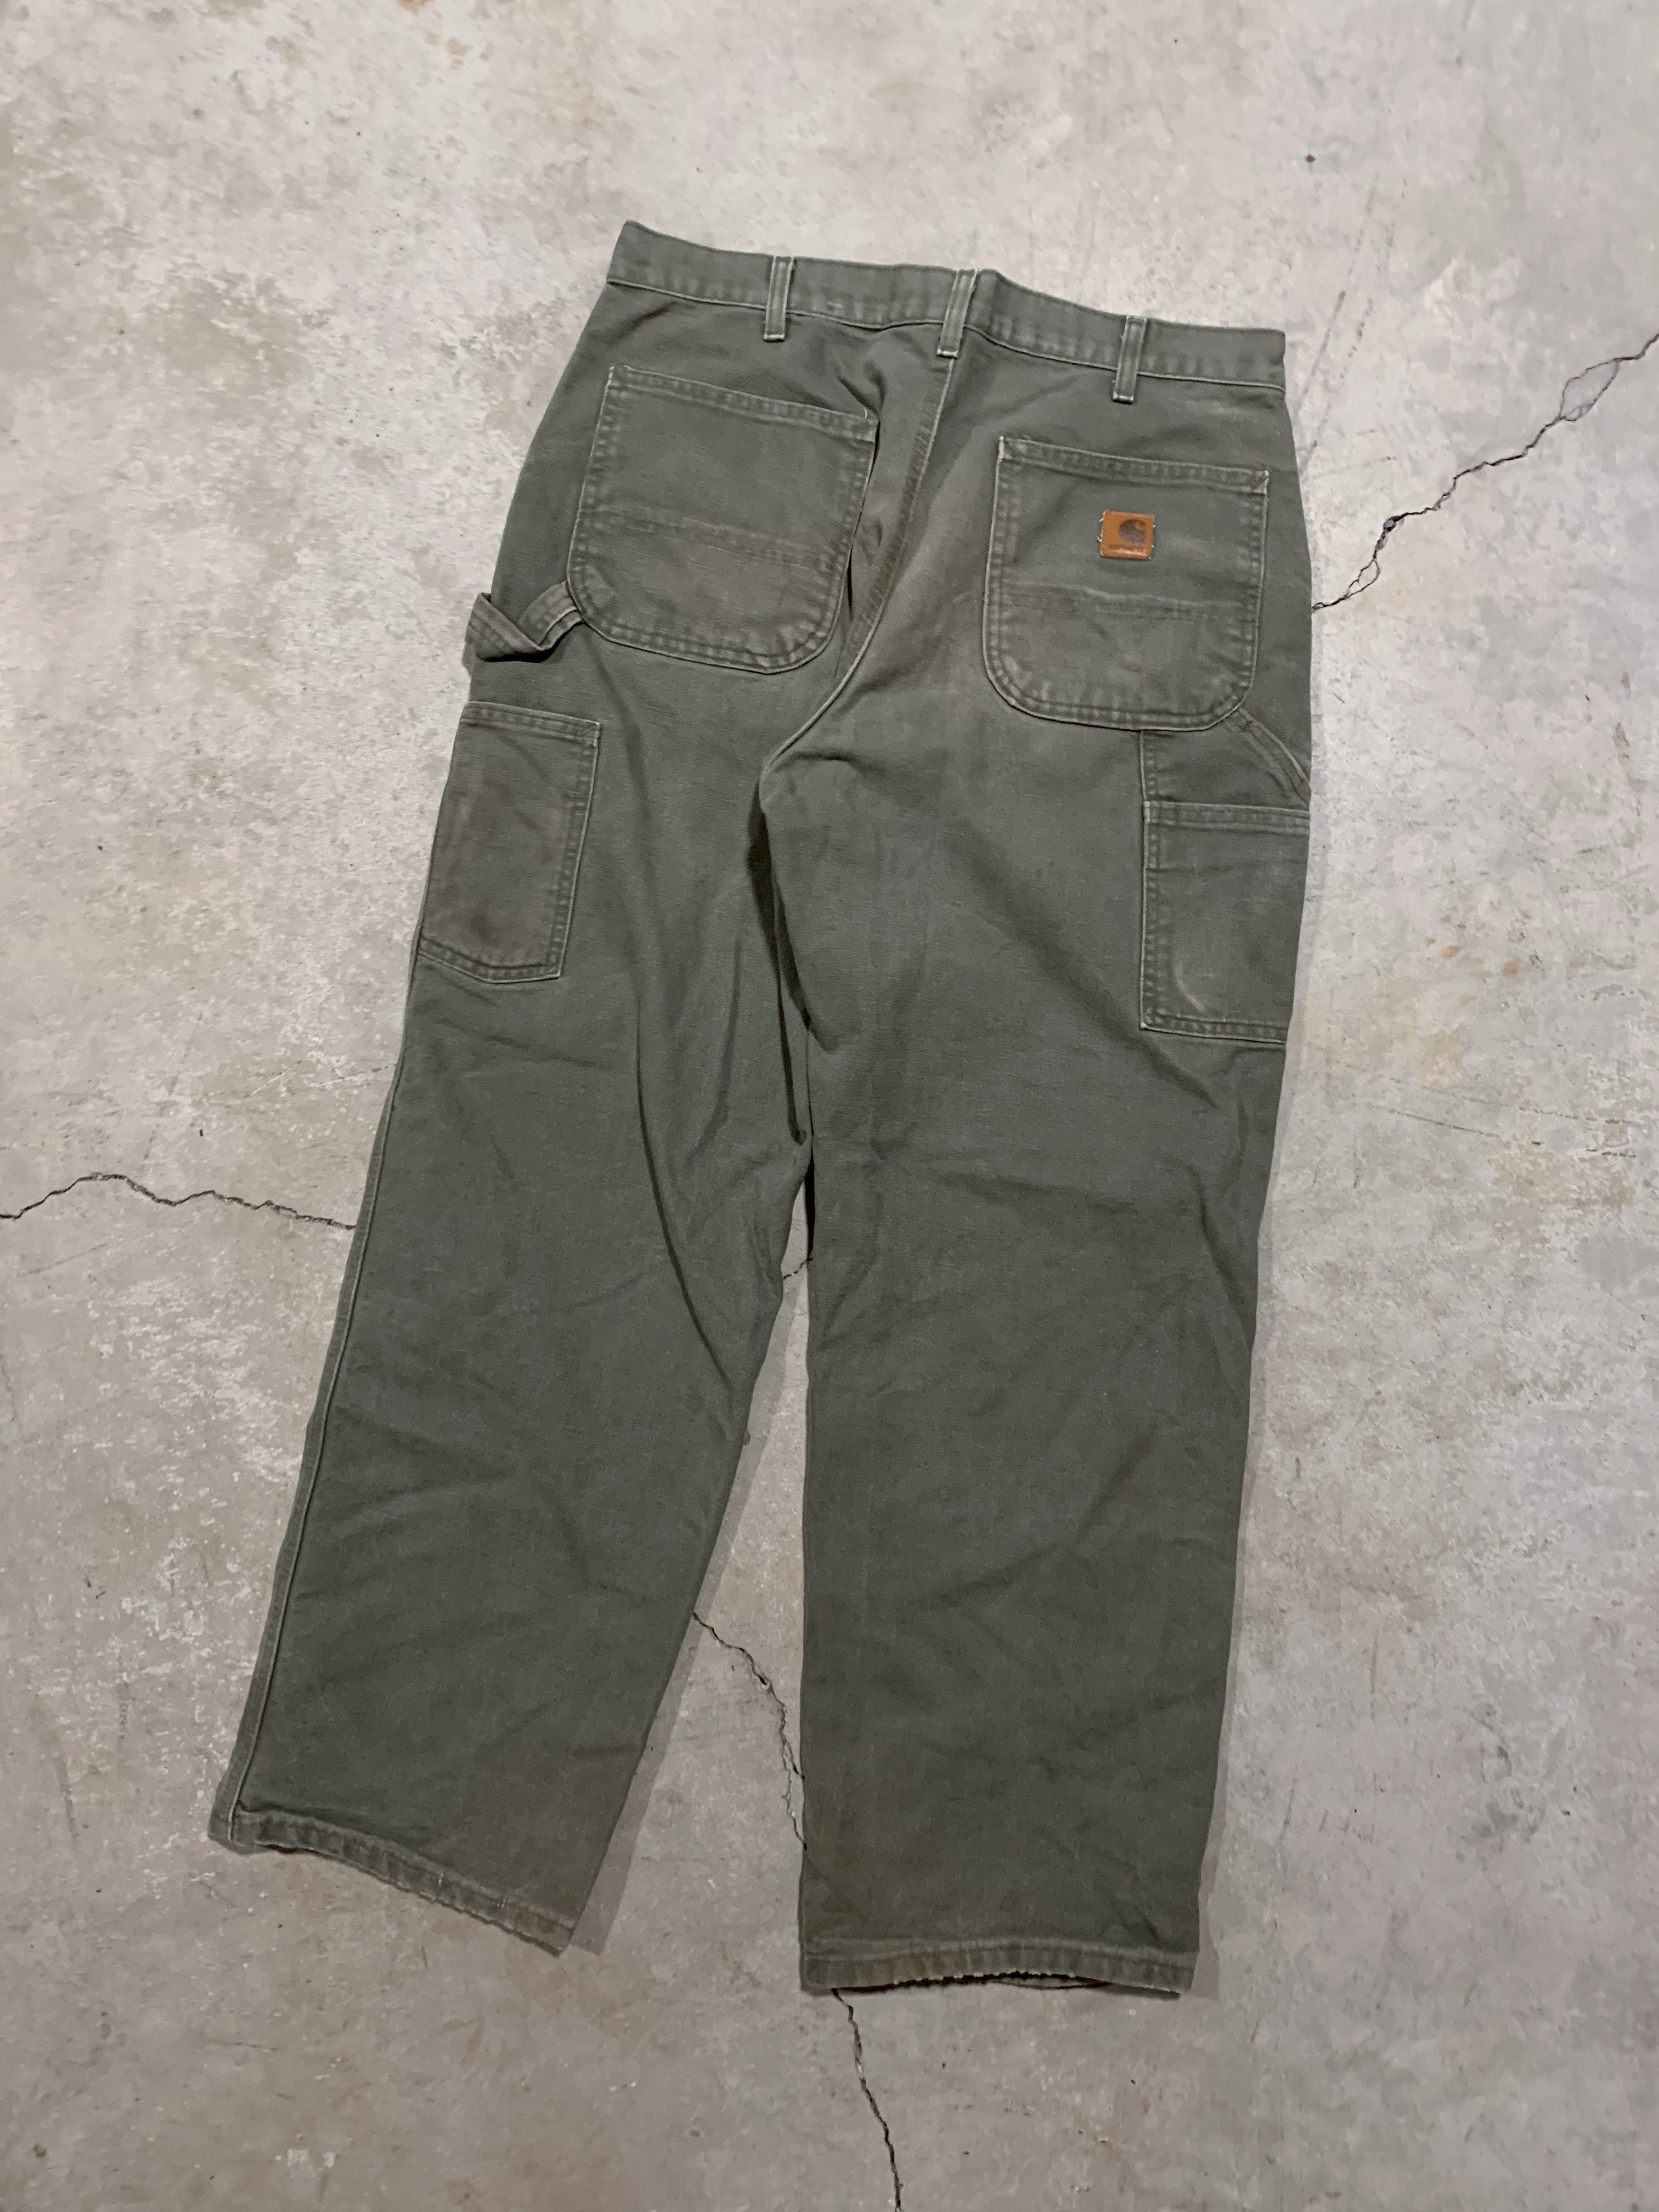 Carhartt Moss Green Carpenter Pants [33 x 30]